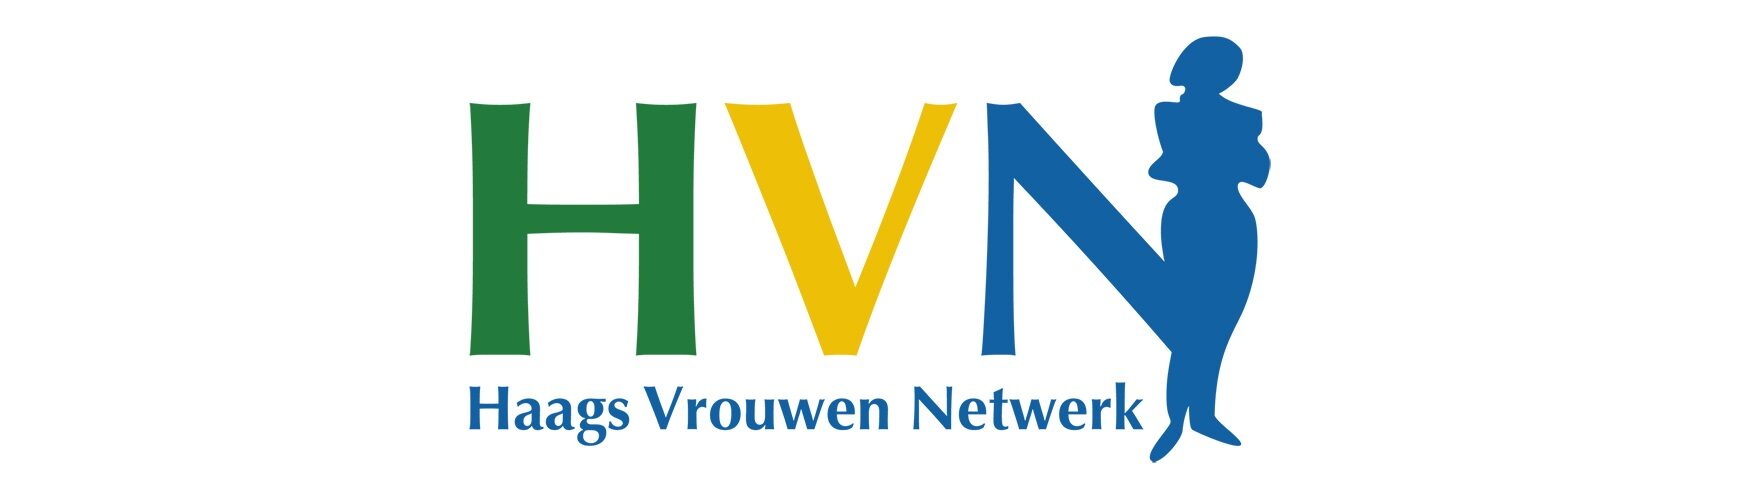 Haags Vrouwen Netwerk